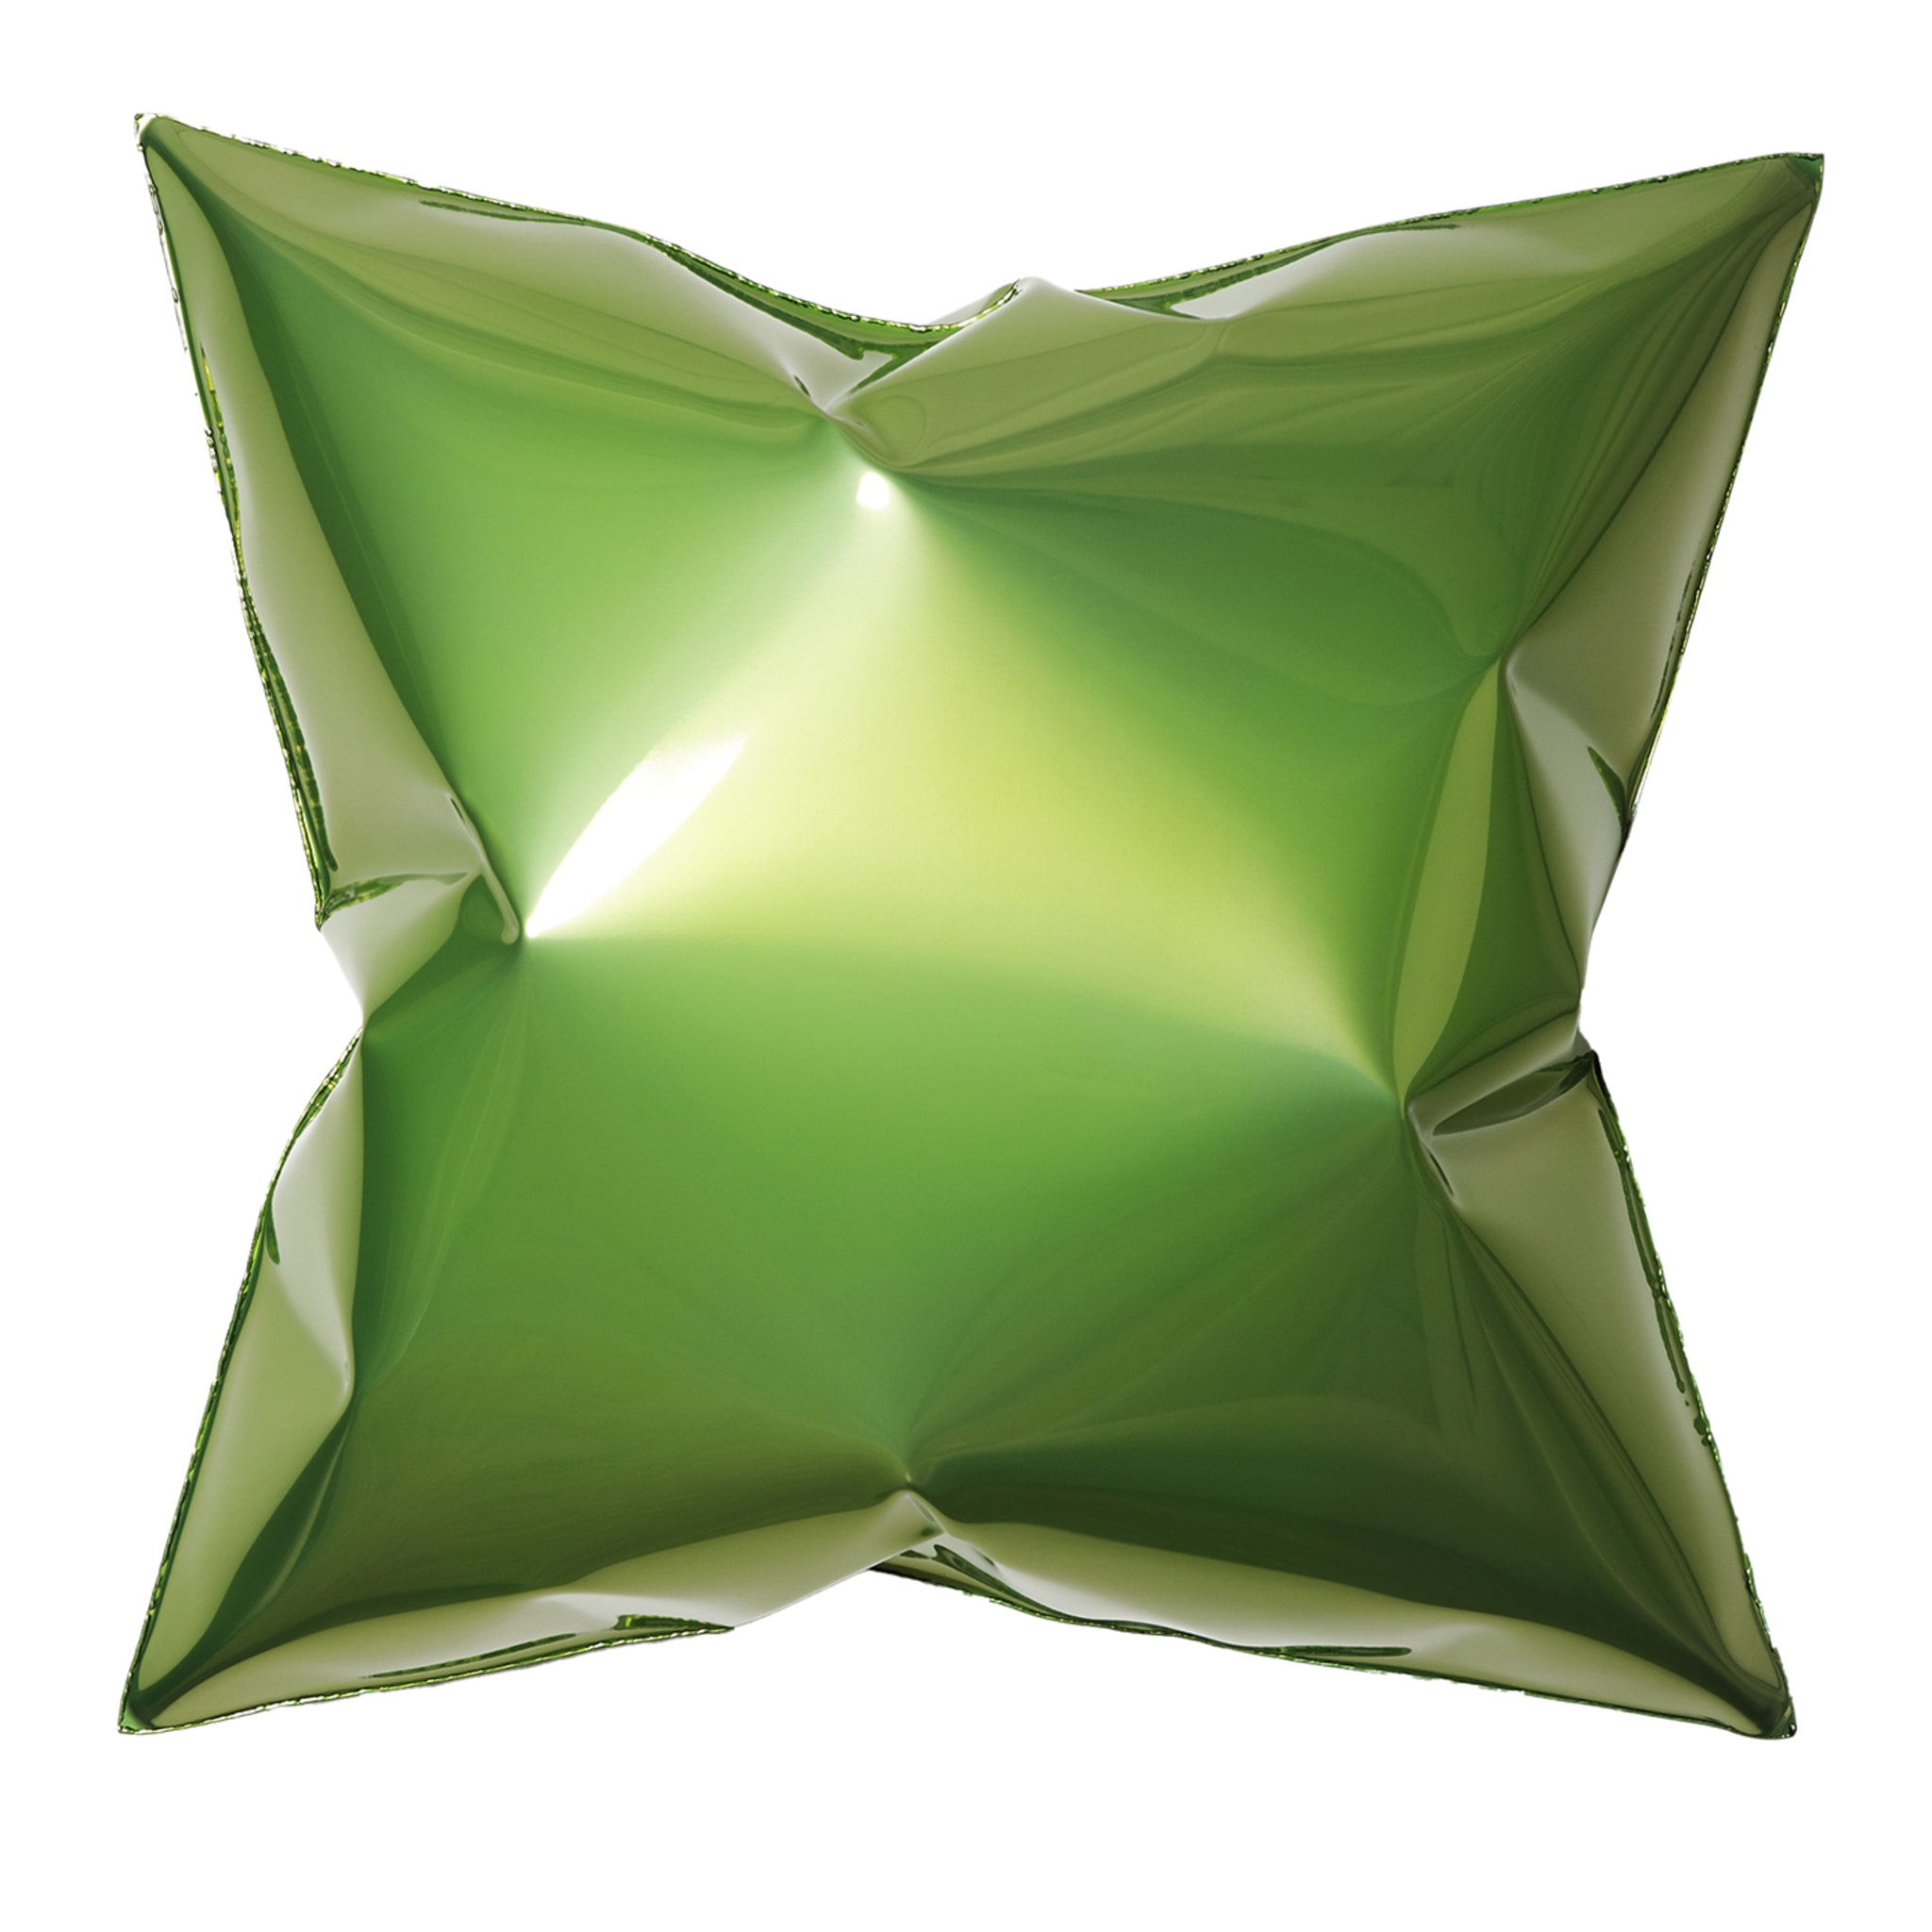 Quadratische grüne Wandskulptur in Form eines Kissens - Hauptansicht